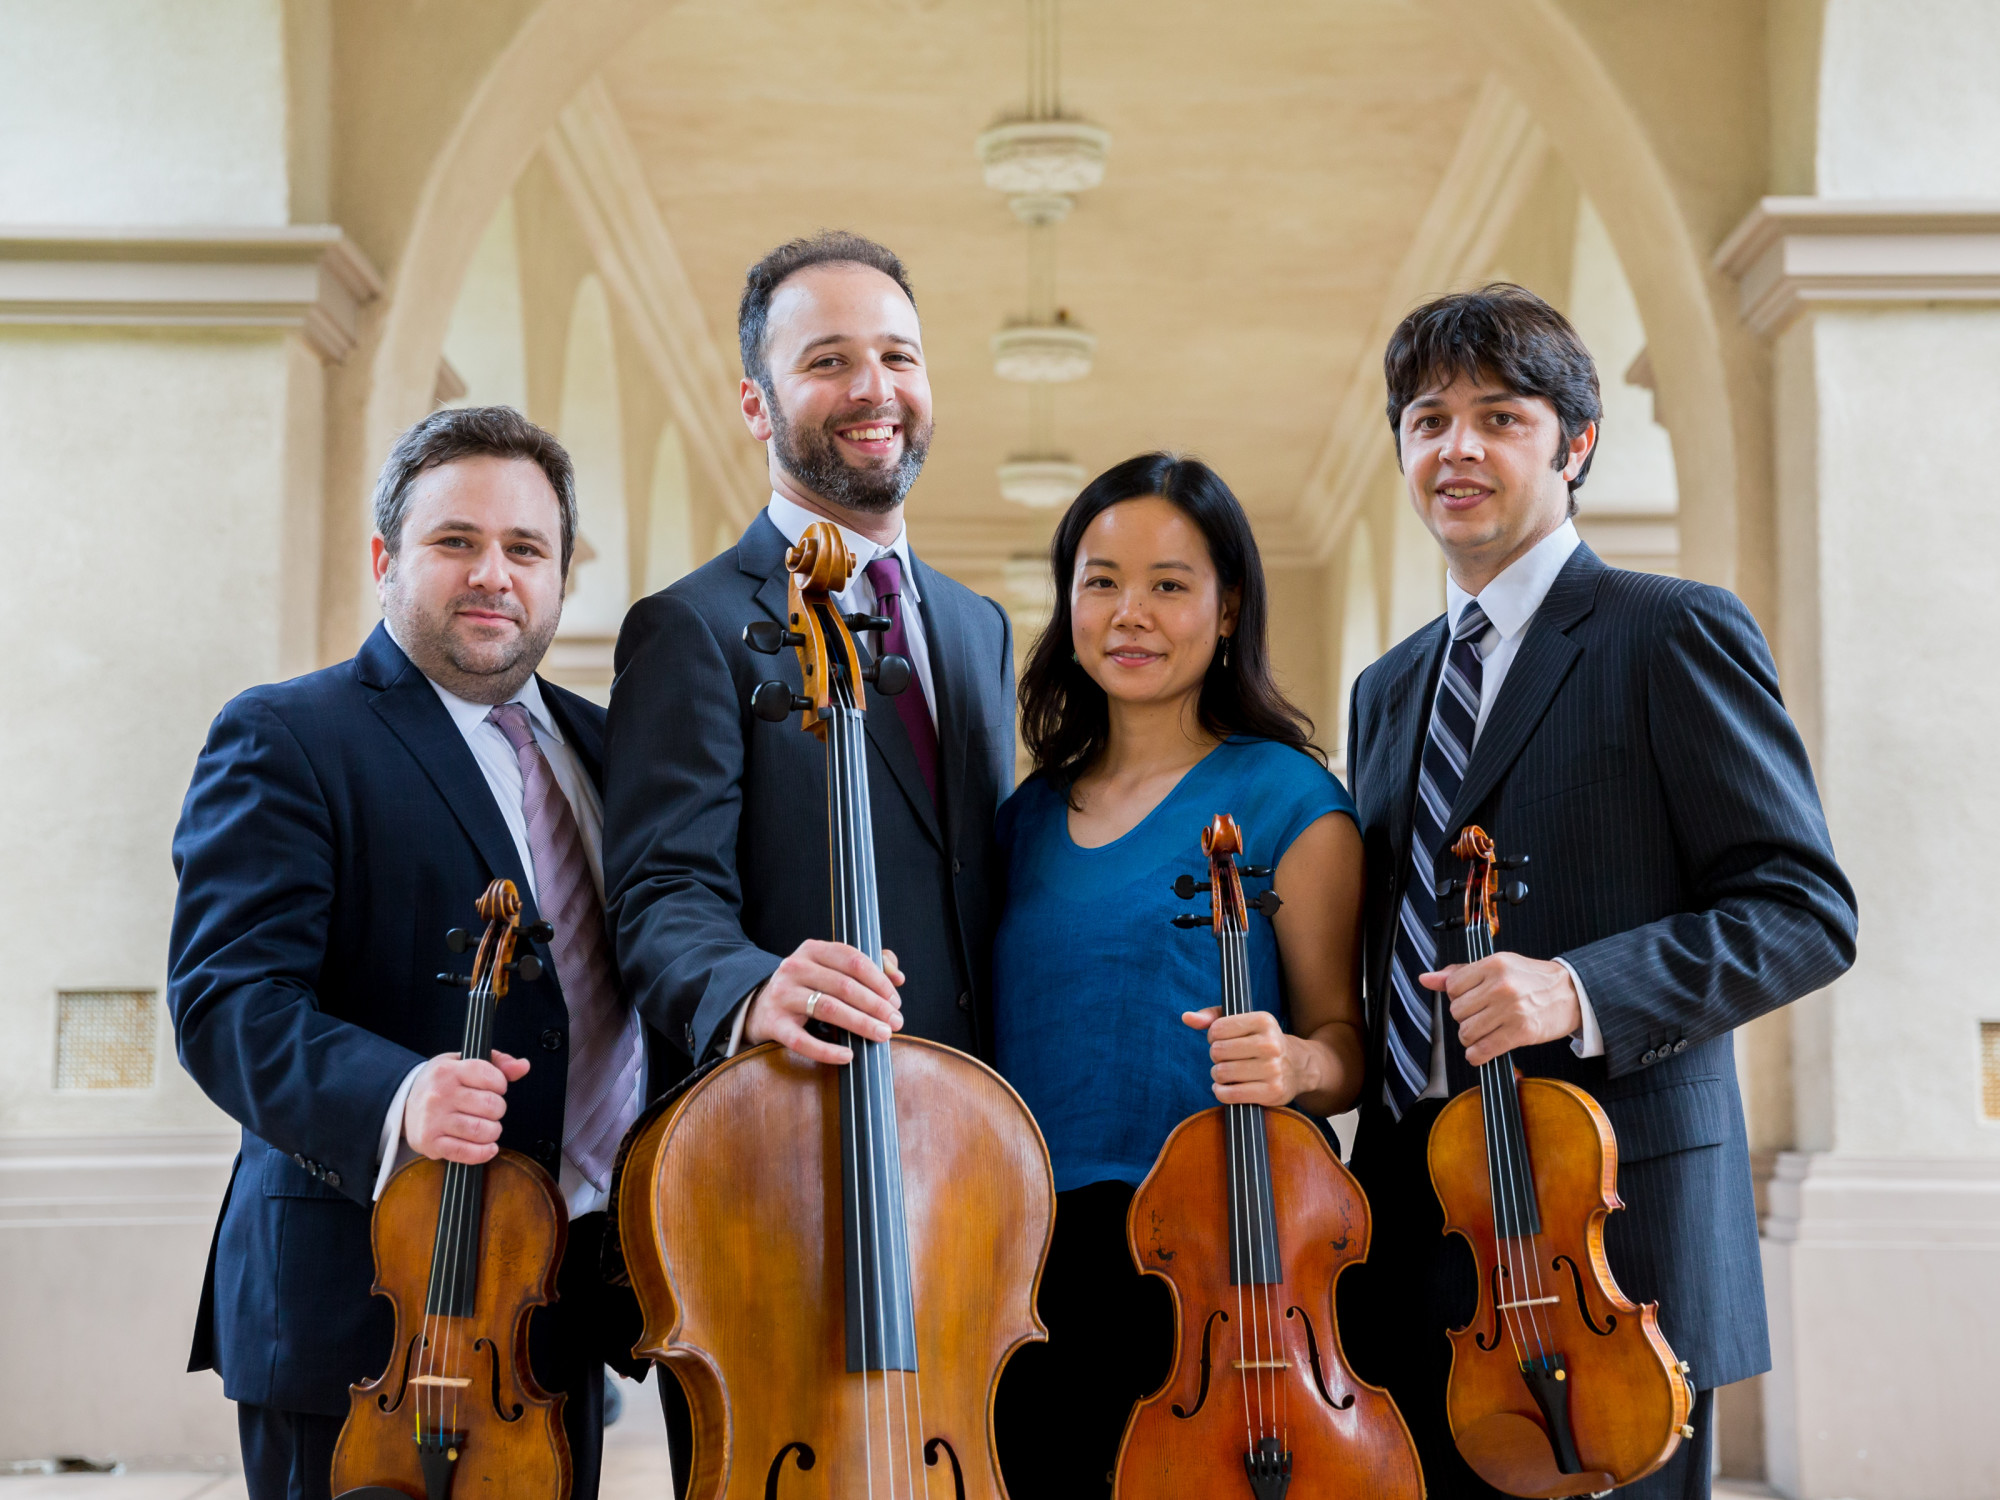 Hausmann Quartet members with instruments